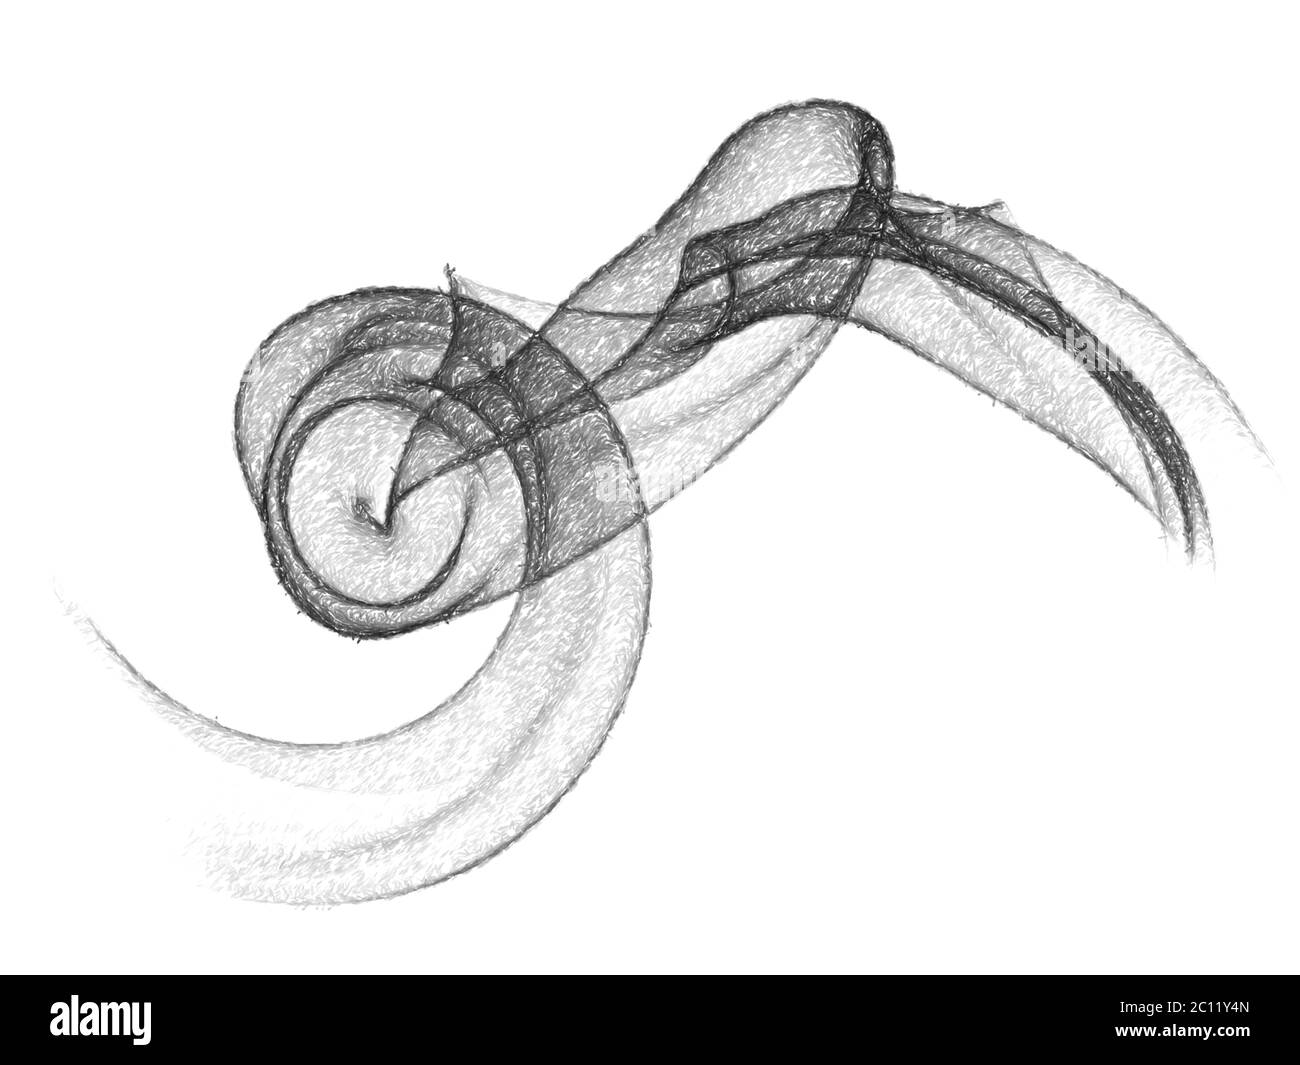 abstrait crayon noir dessiné fumée sur fond blanc avec espace de copie Banque D'Images